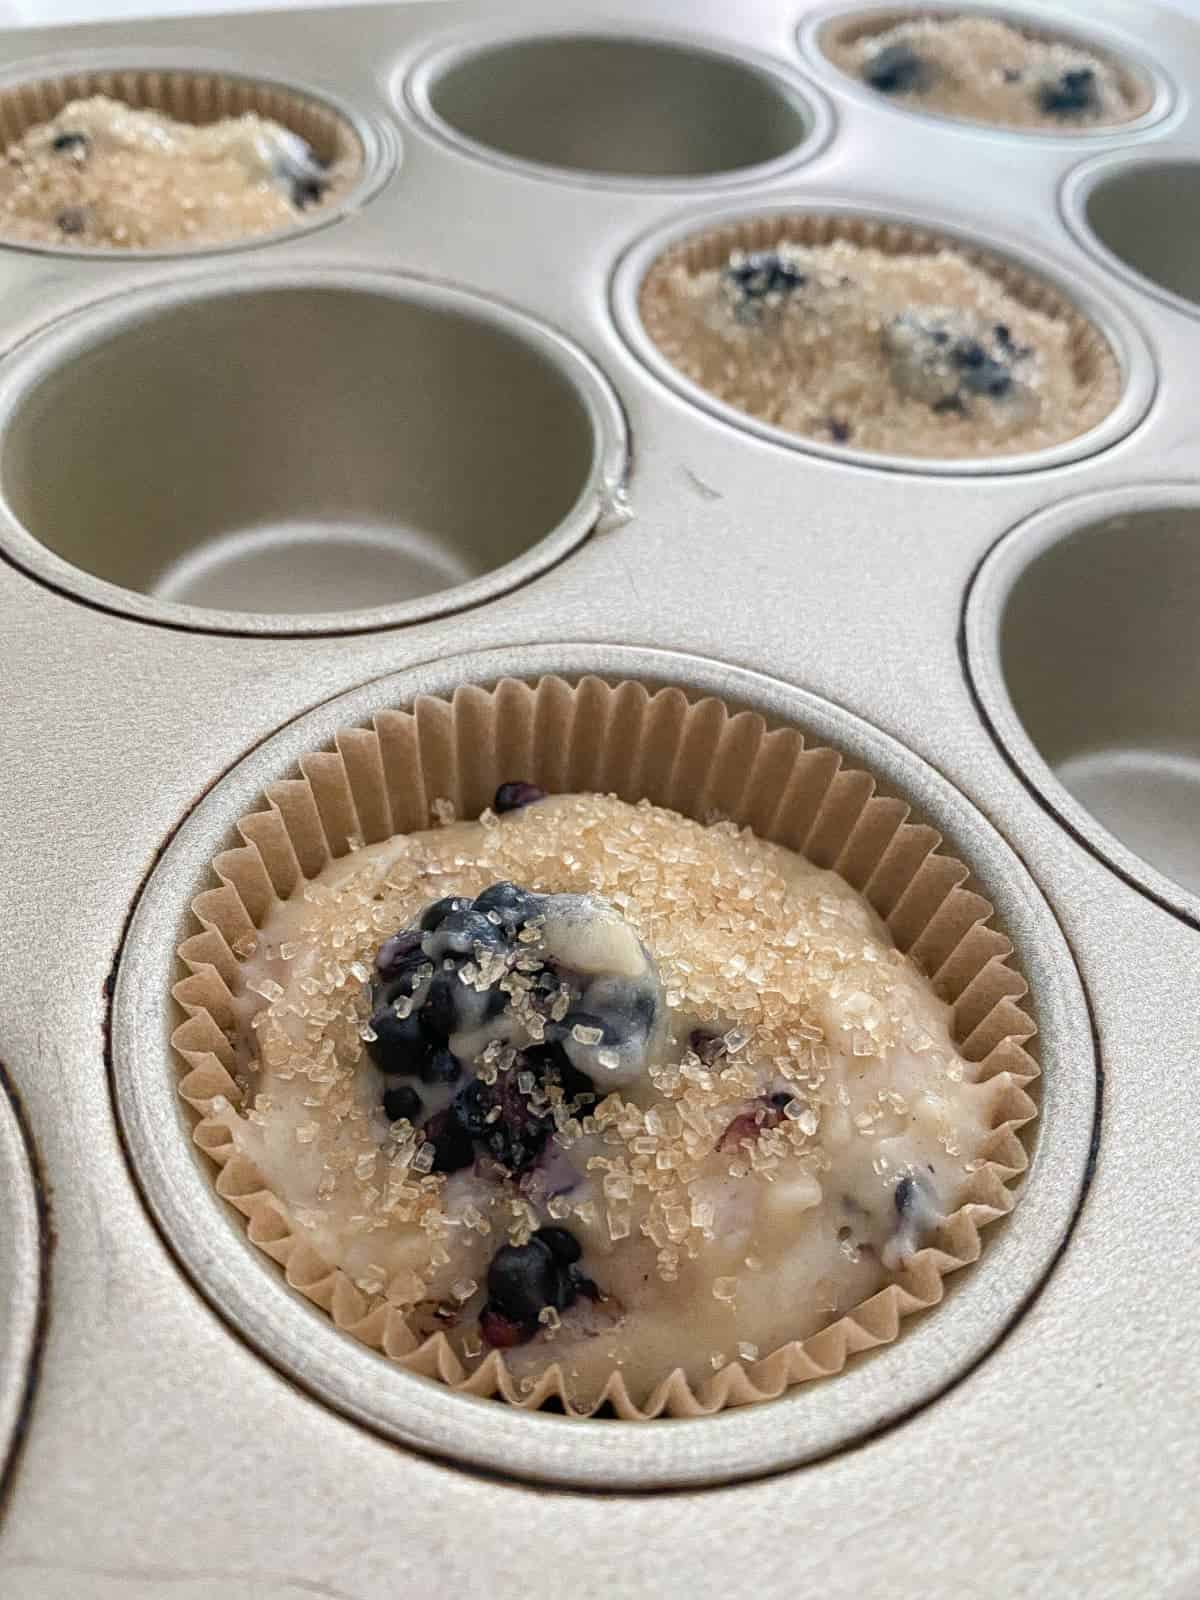 Closeup of Blackberry Buttermilk Muffin batter in pan.